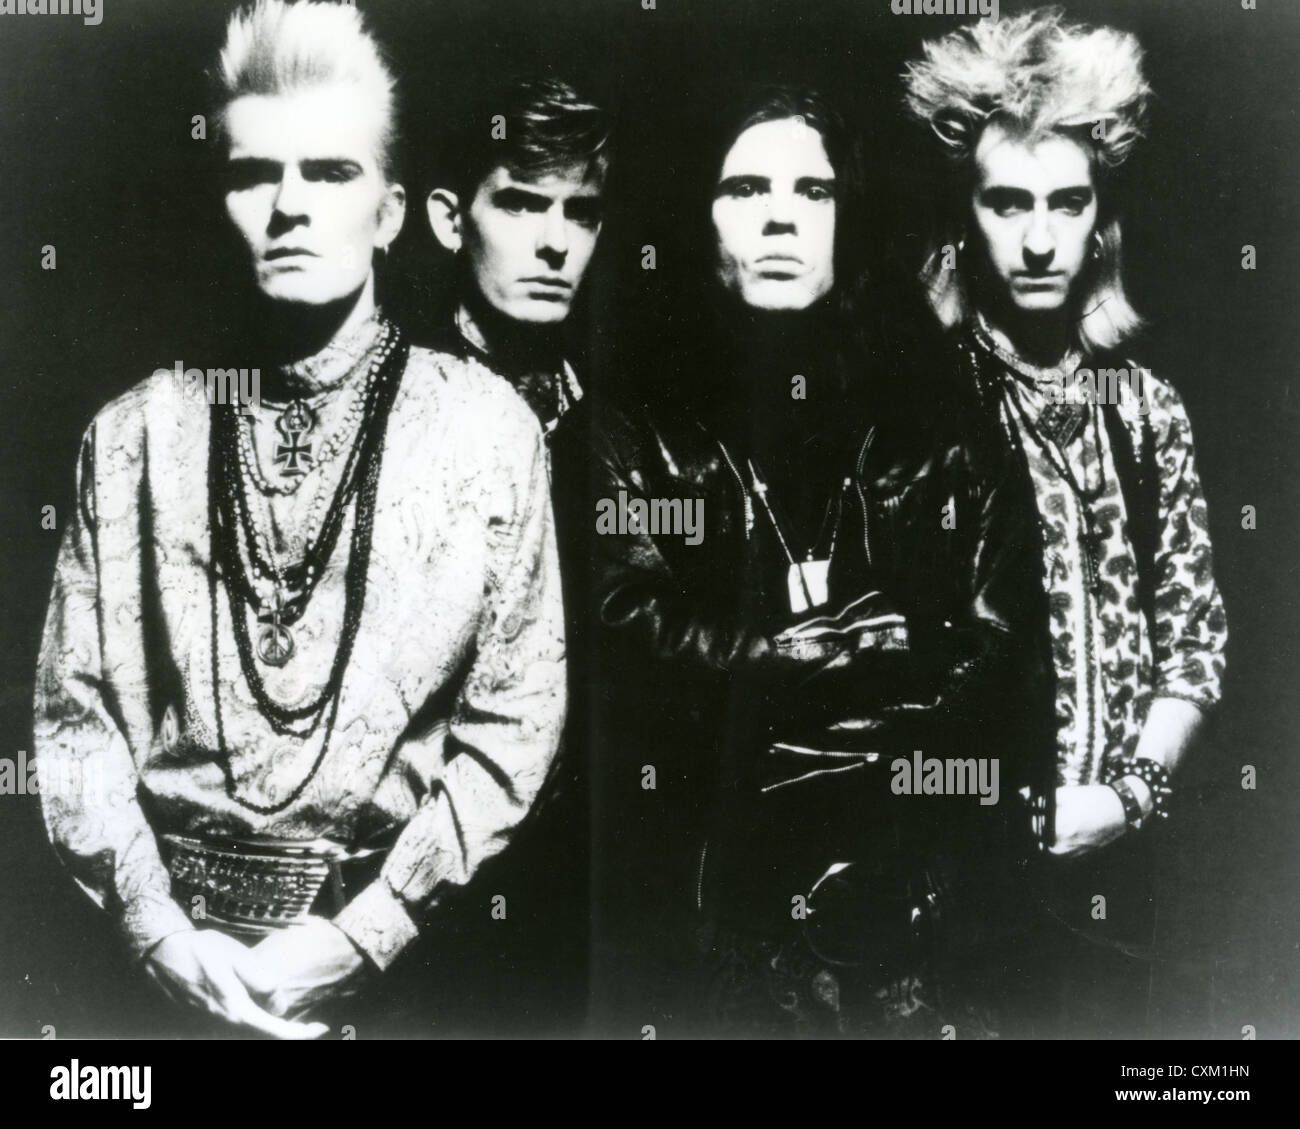 Le culte de la photo promotionnelle du groupe de rock britannique de 1990 avec Billy Duffy à gauche et Ian Astbury en noir Banque D'Images